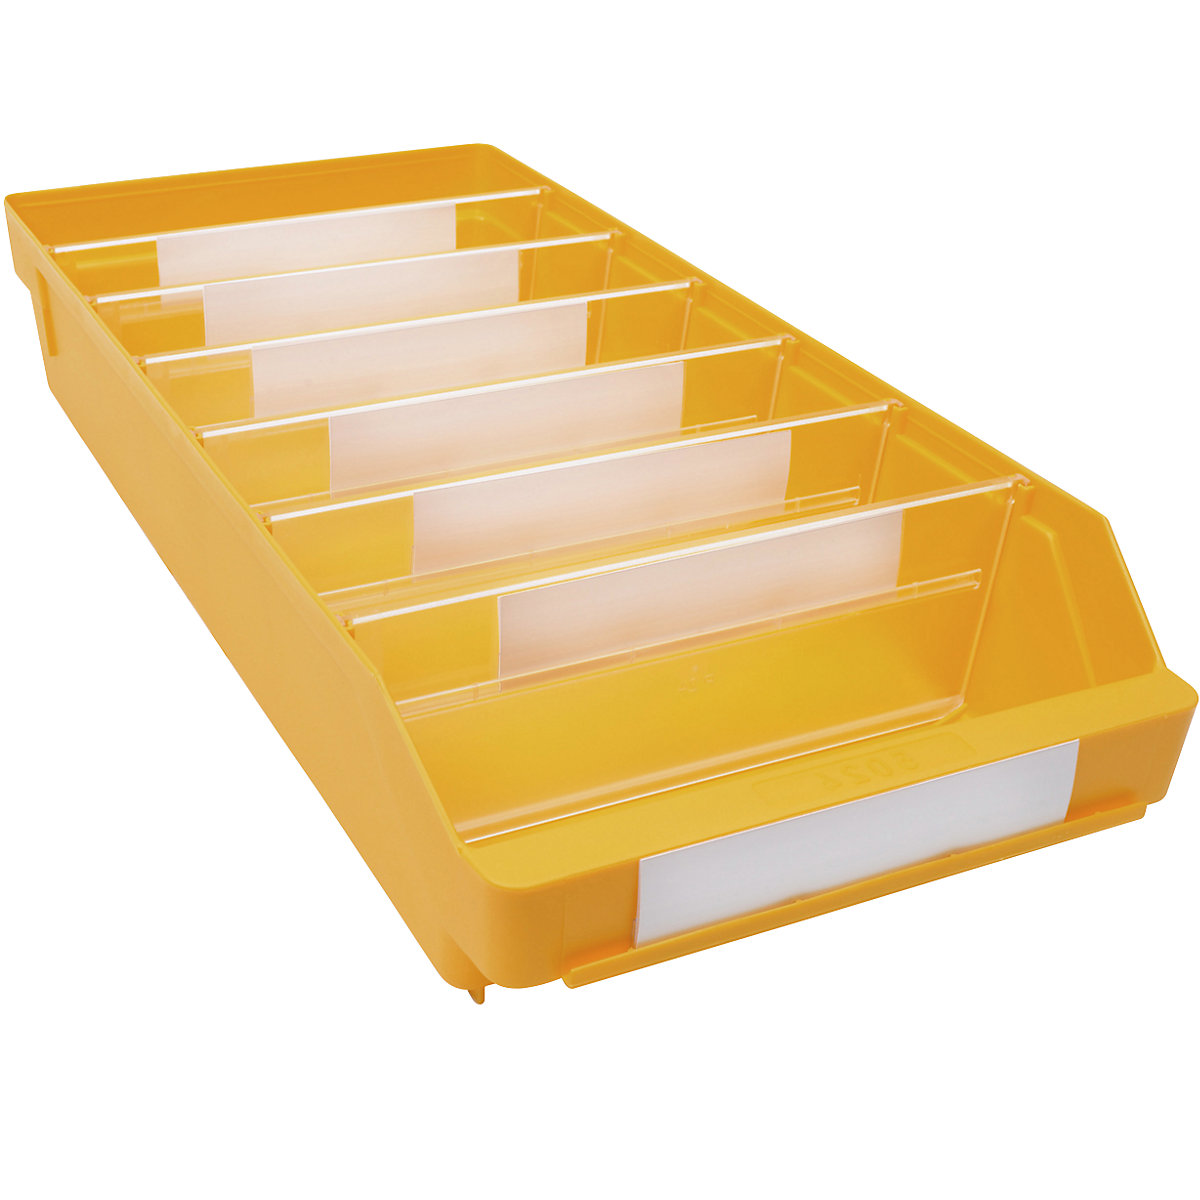 Bac de stockage en polypropylène résistant aux chocs – STEMO, coloris jaune, L x l x h 500 x 240 x 95 mm, lot de 15-13